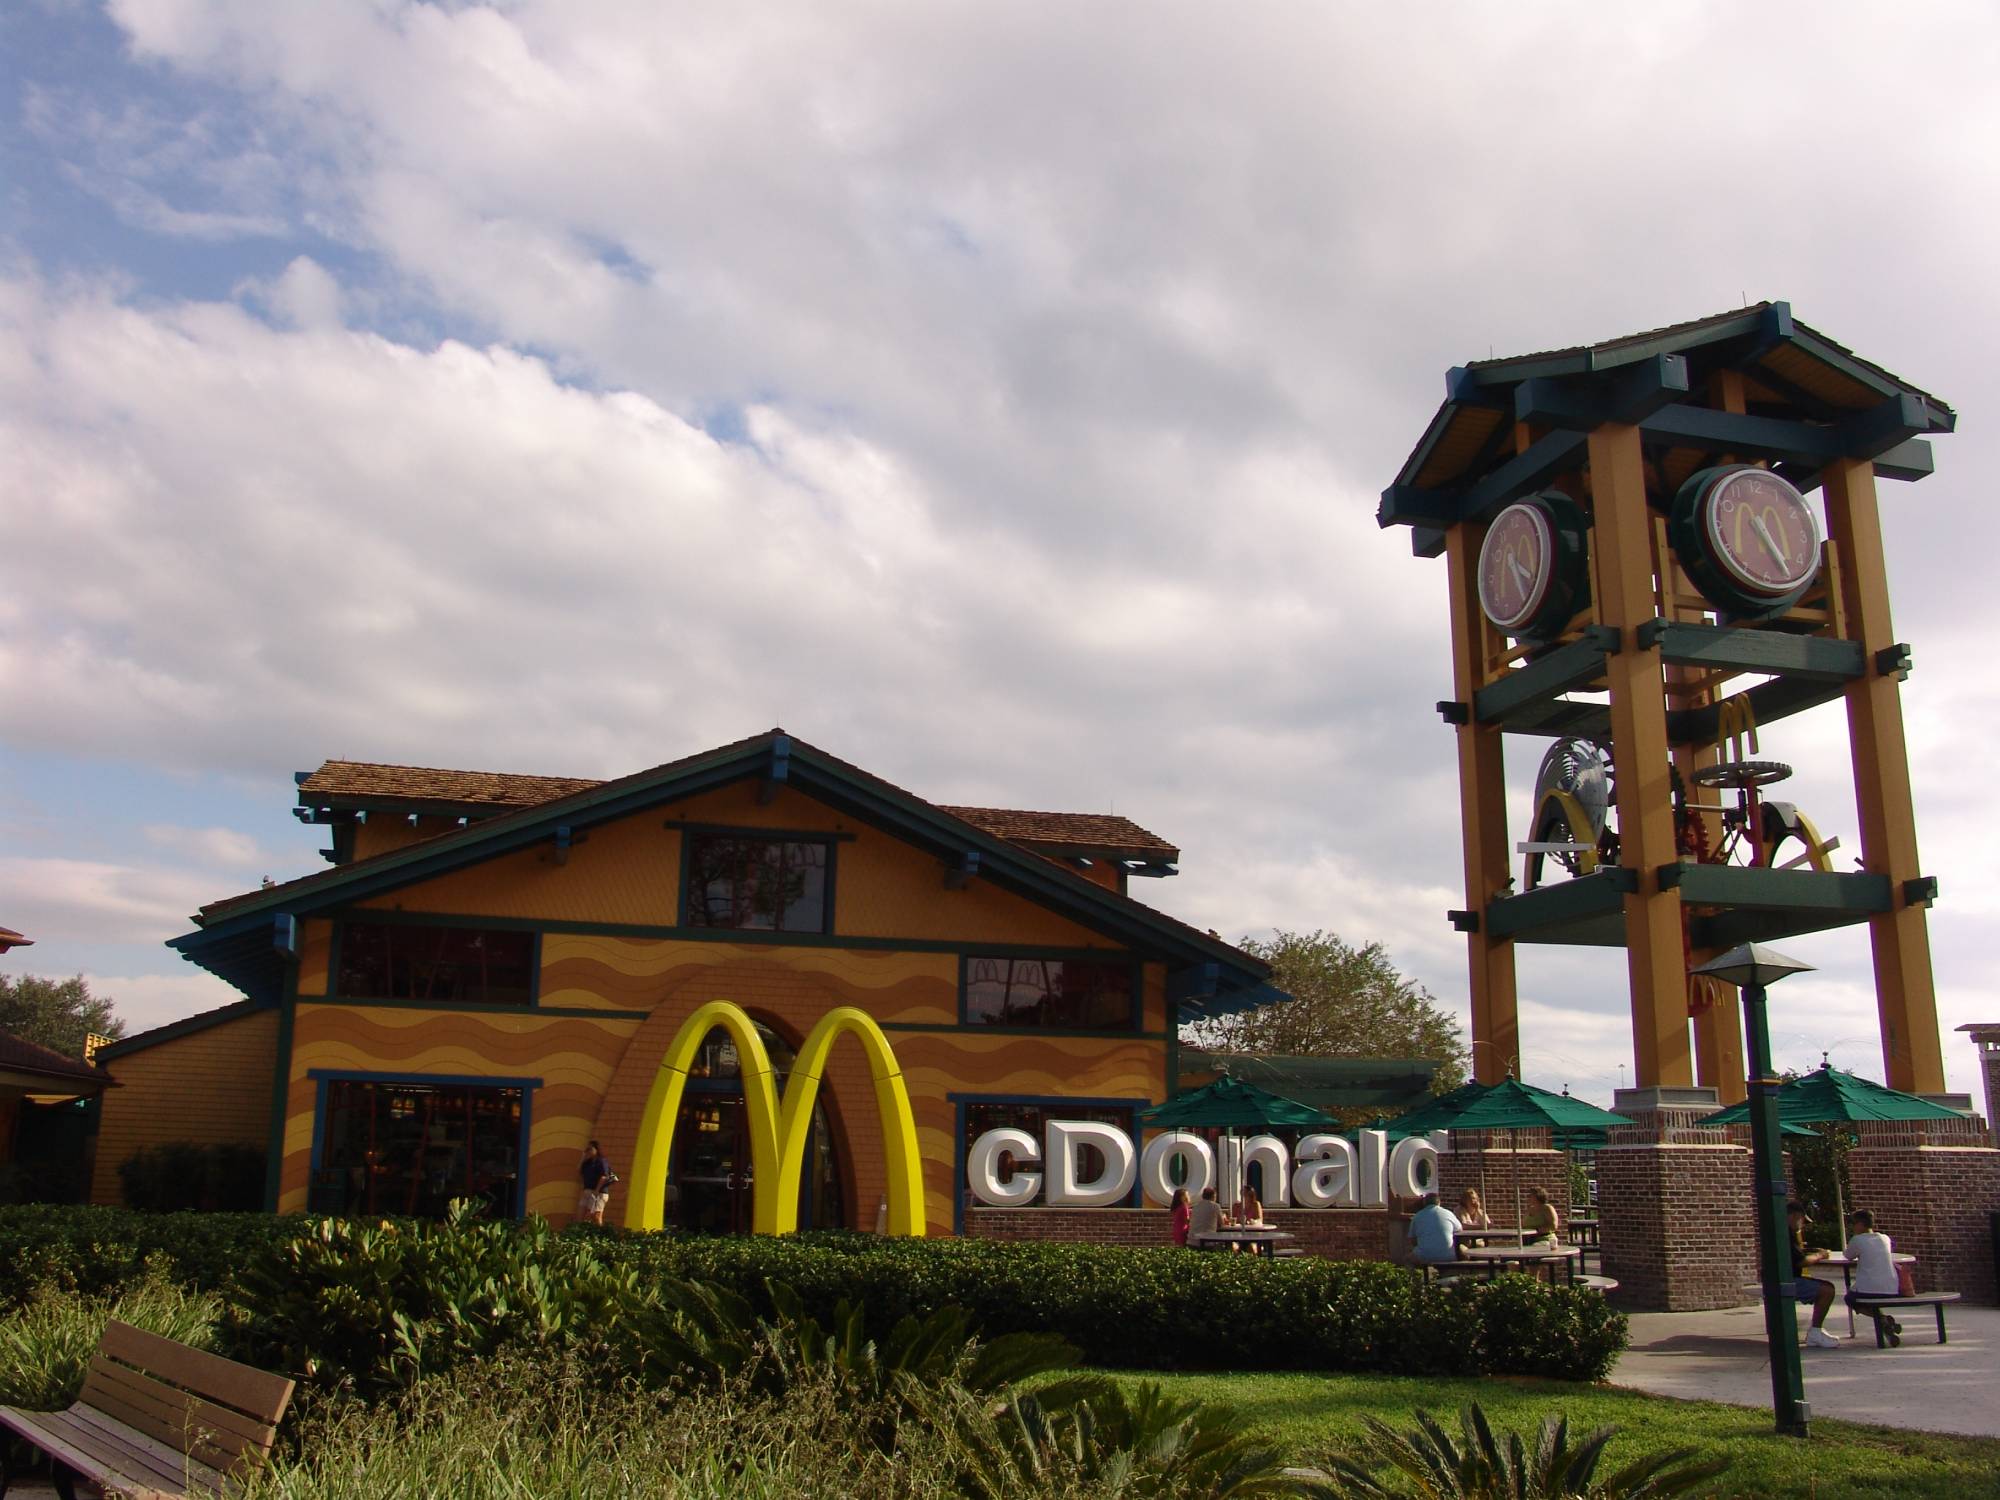 Downtown Disney - McDonald's